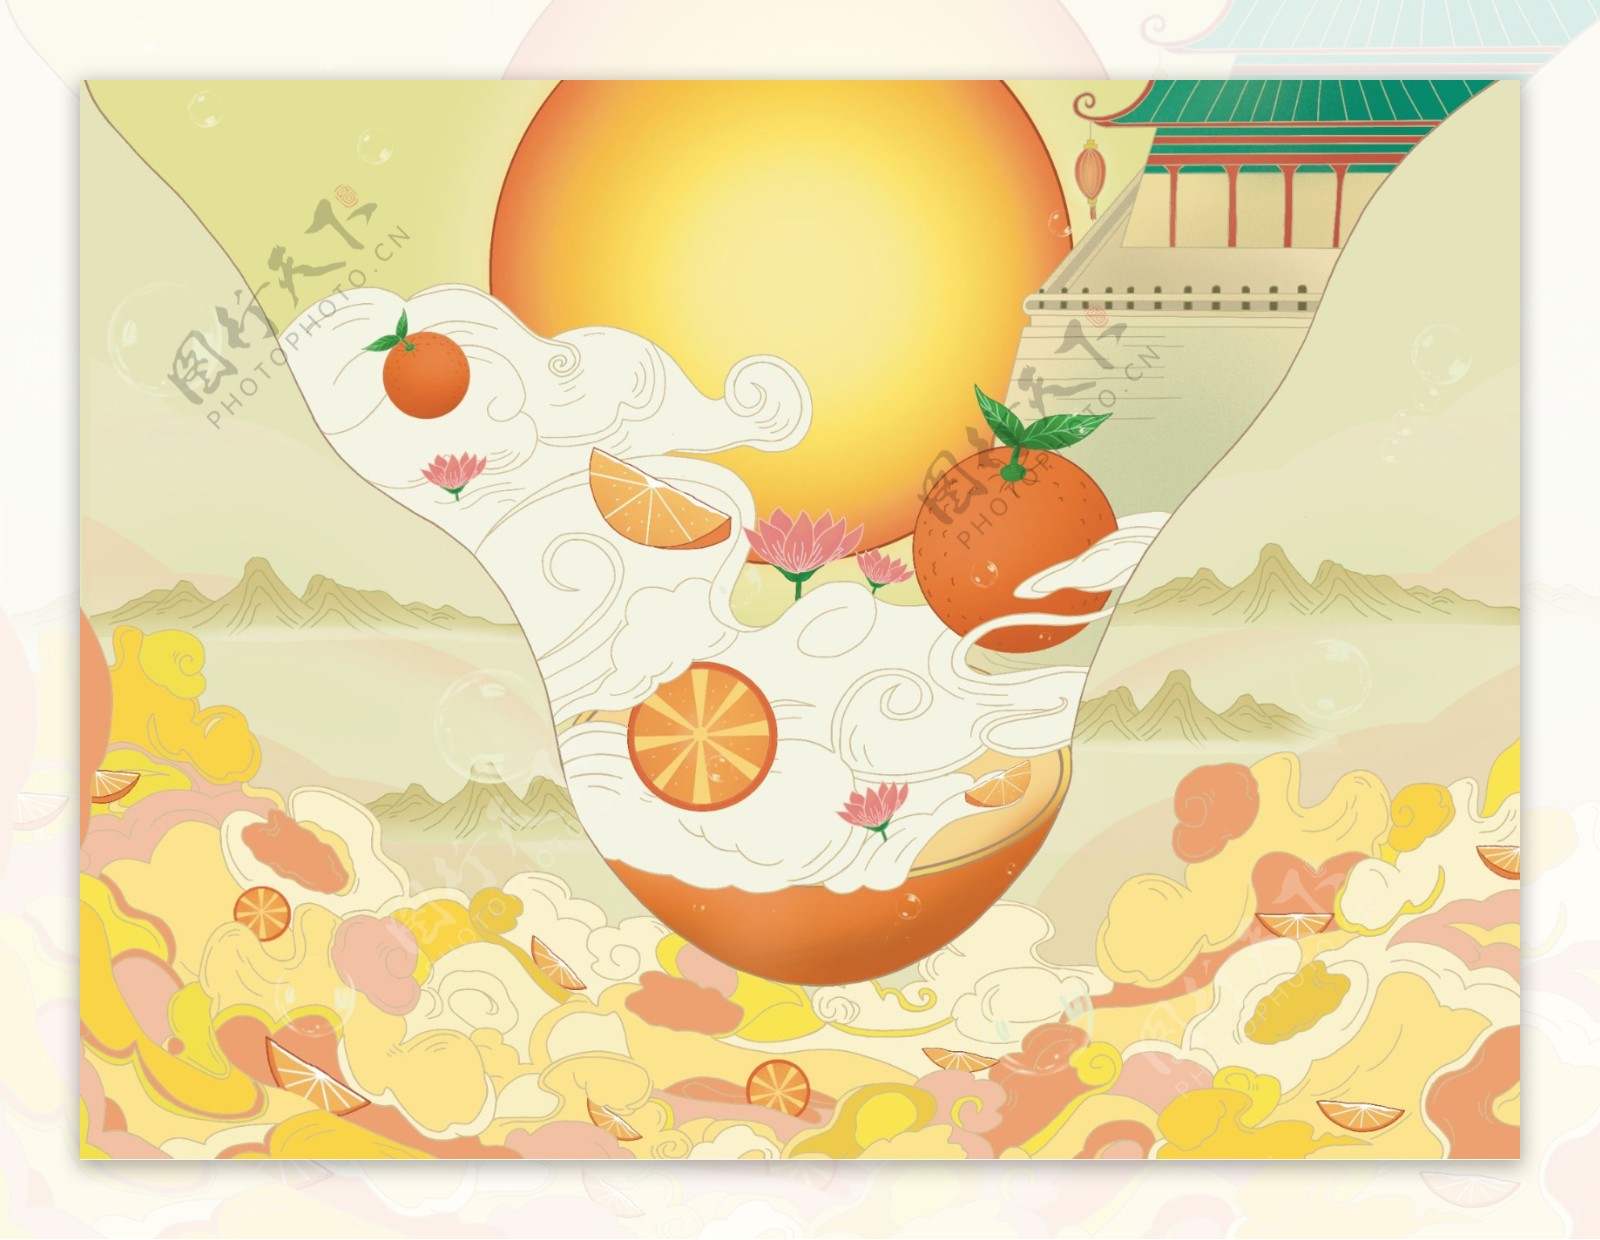 一款中国风橙子包装插画图片